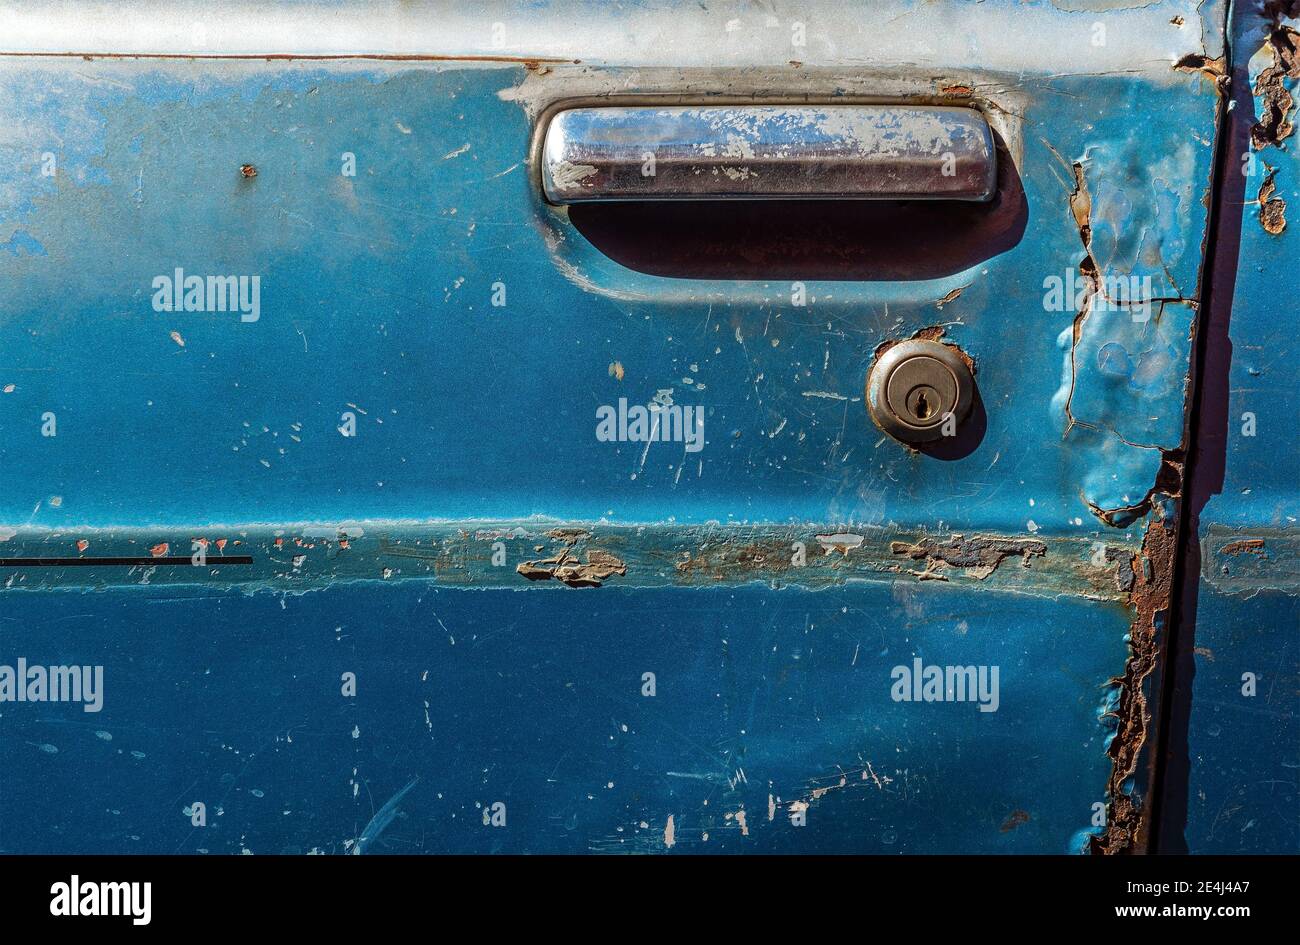 Puerta azul de un coche naufragado en Antigua, Guatemala. Céntrese en la abertura. Foto de stock